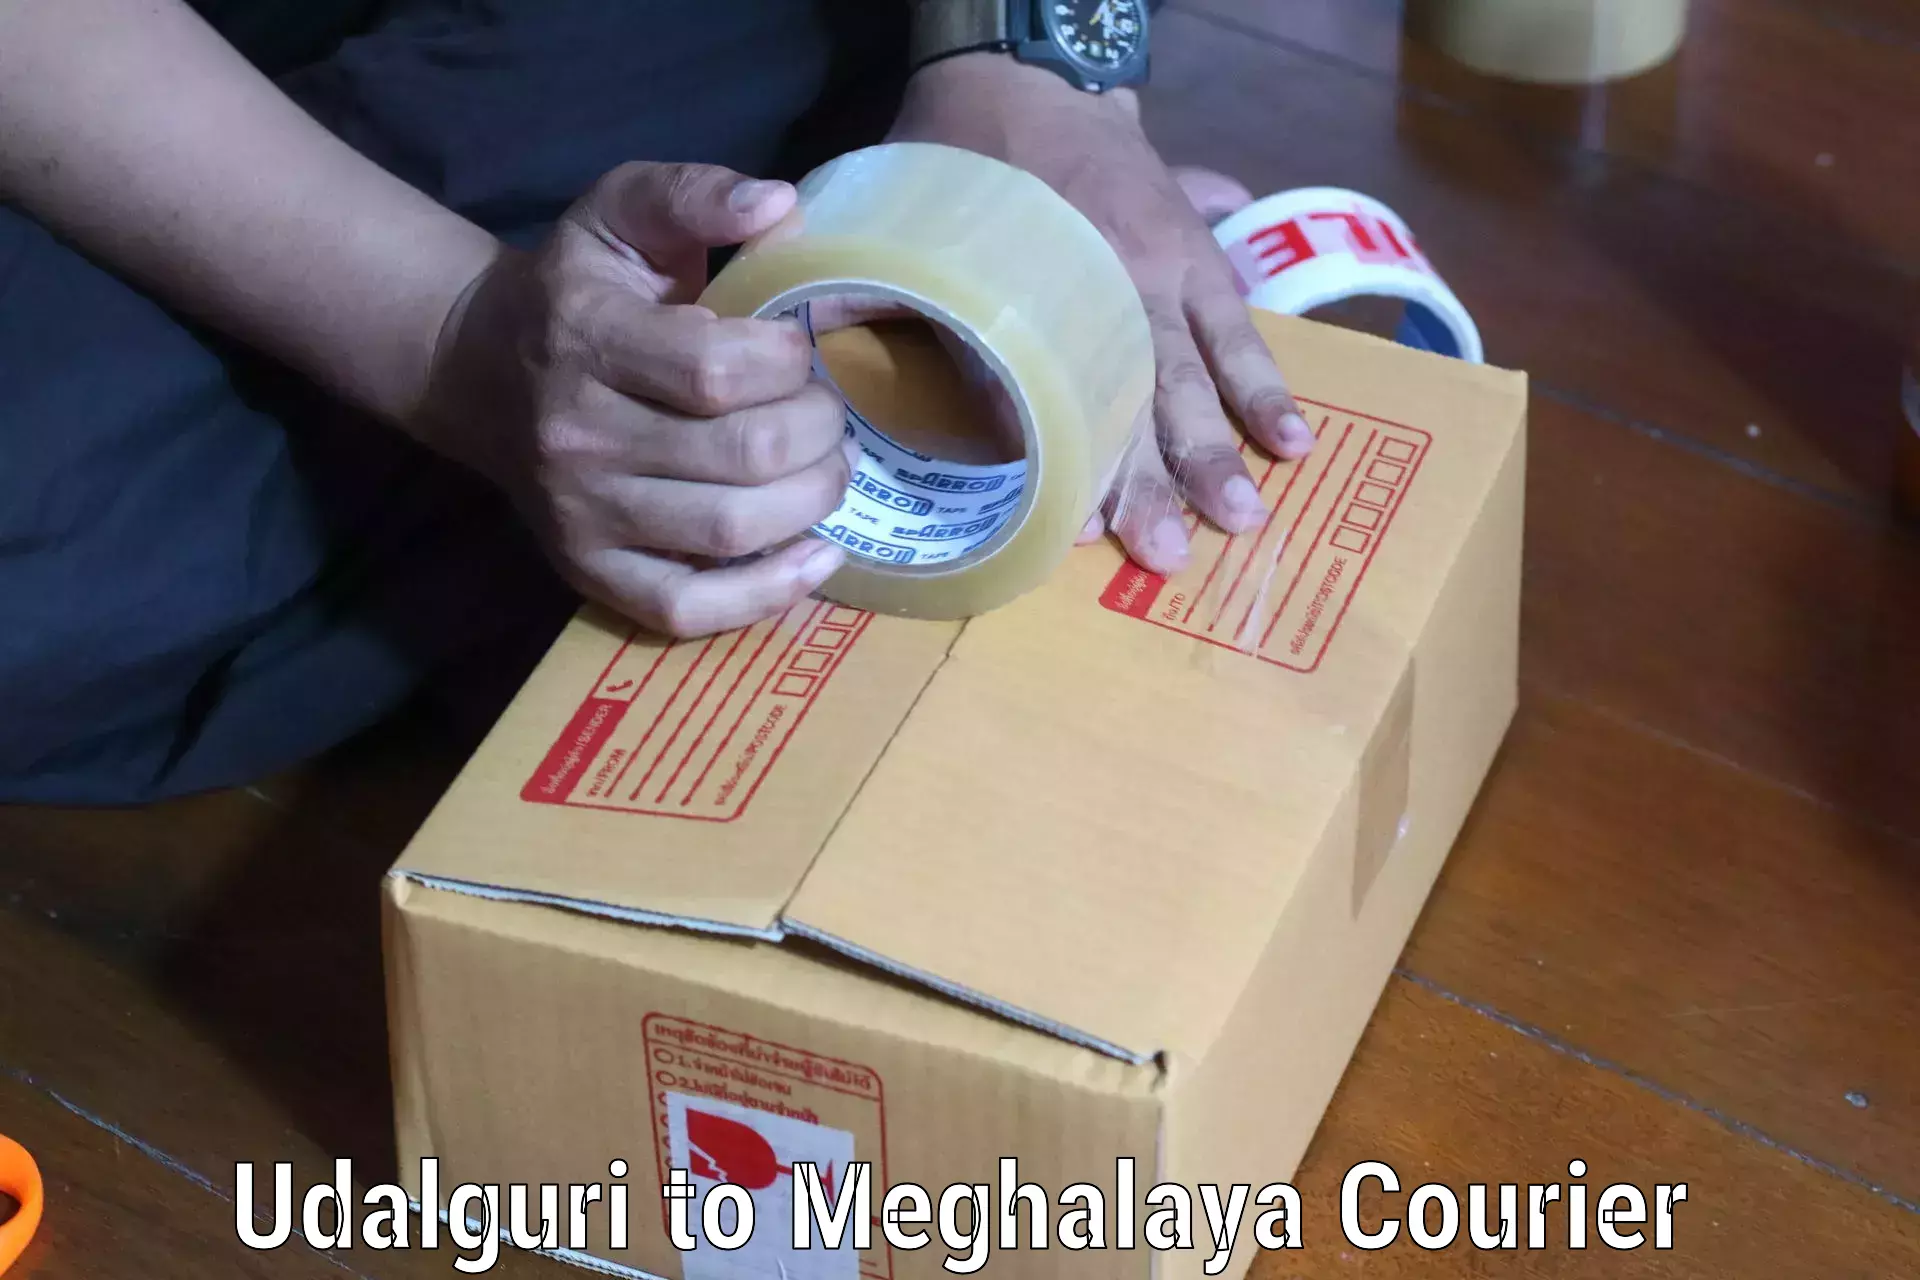 Reliable package handling Udalguri to Ri Bhoi